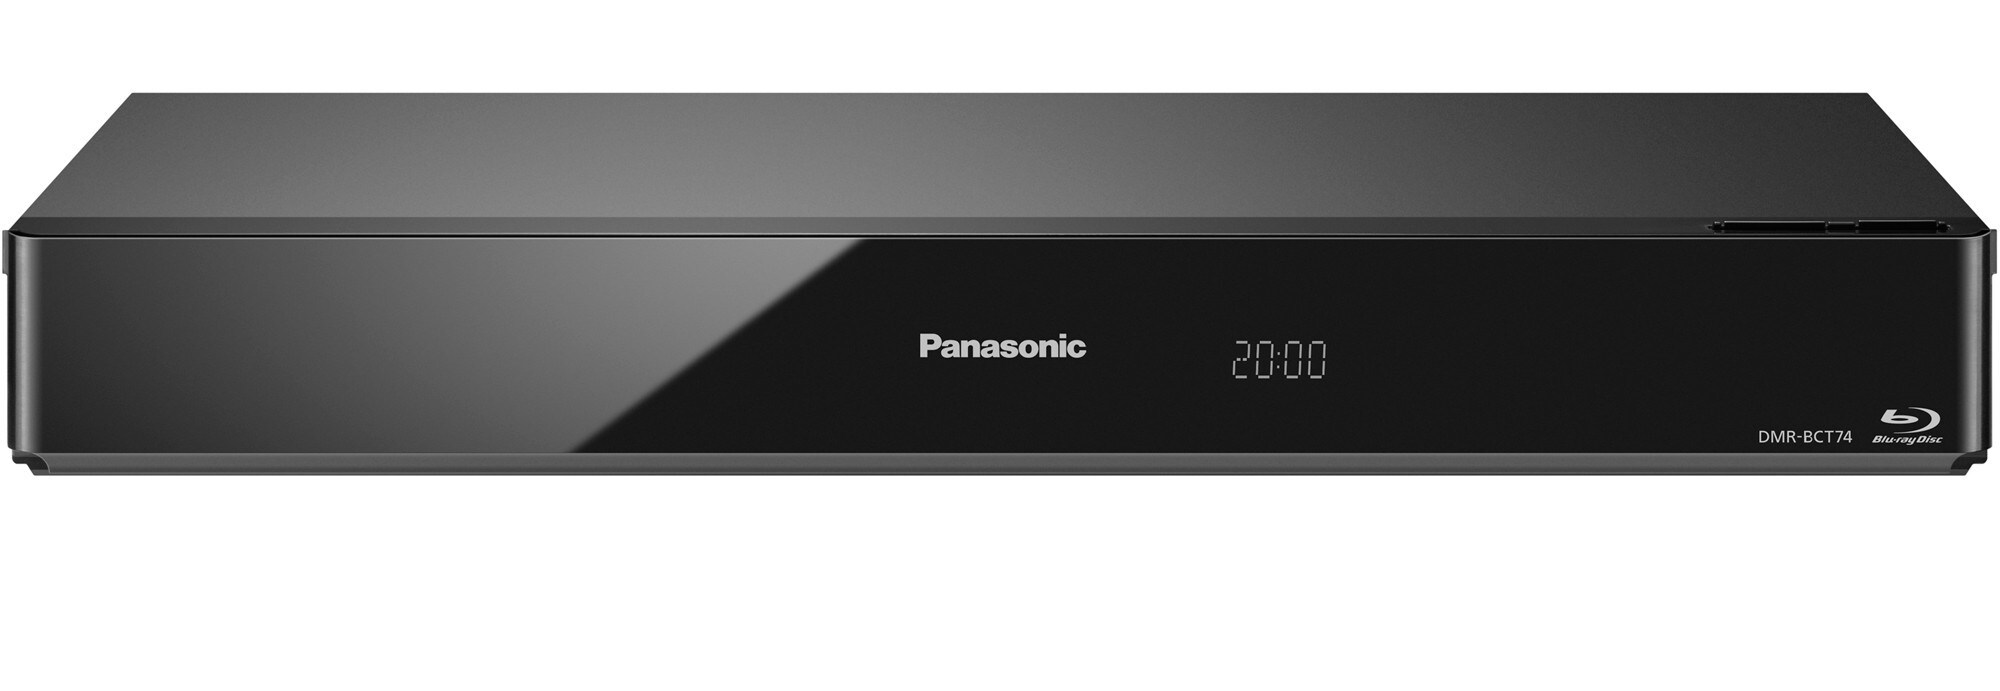 Panasonic 3D Smart Blu-ray-spiller 500 GB DMR-BCT74ENK - Elkjøp